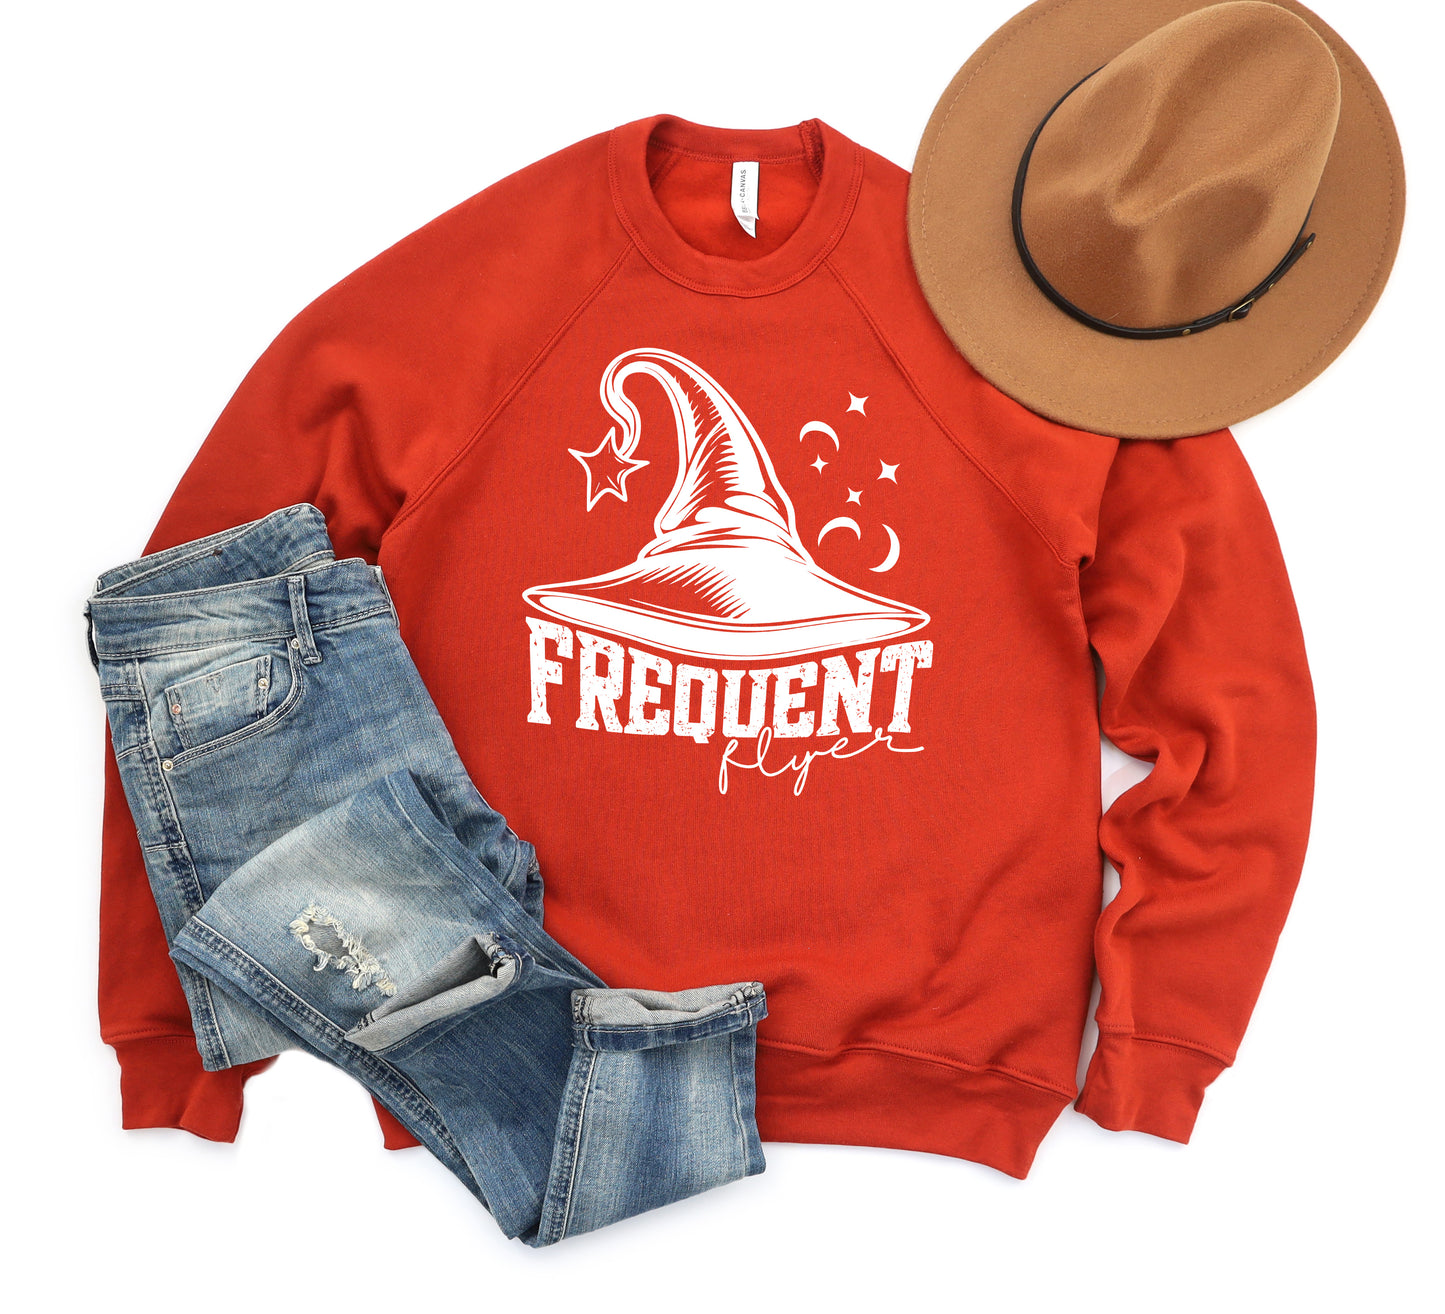 Frequent Flyer Hat | Bella Canvas Sweatshirt